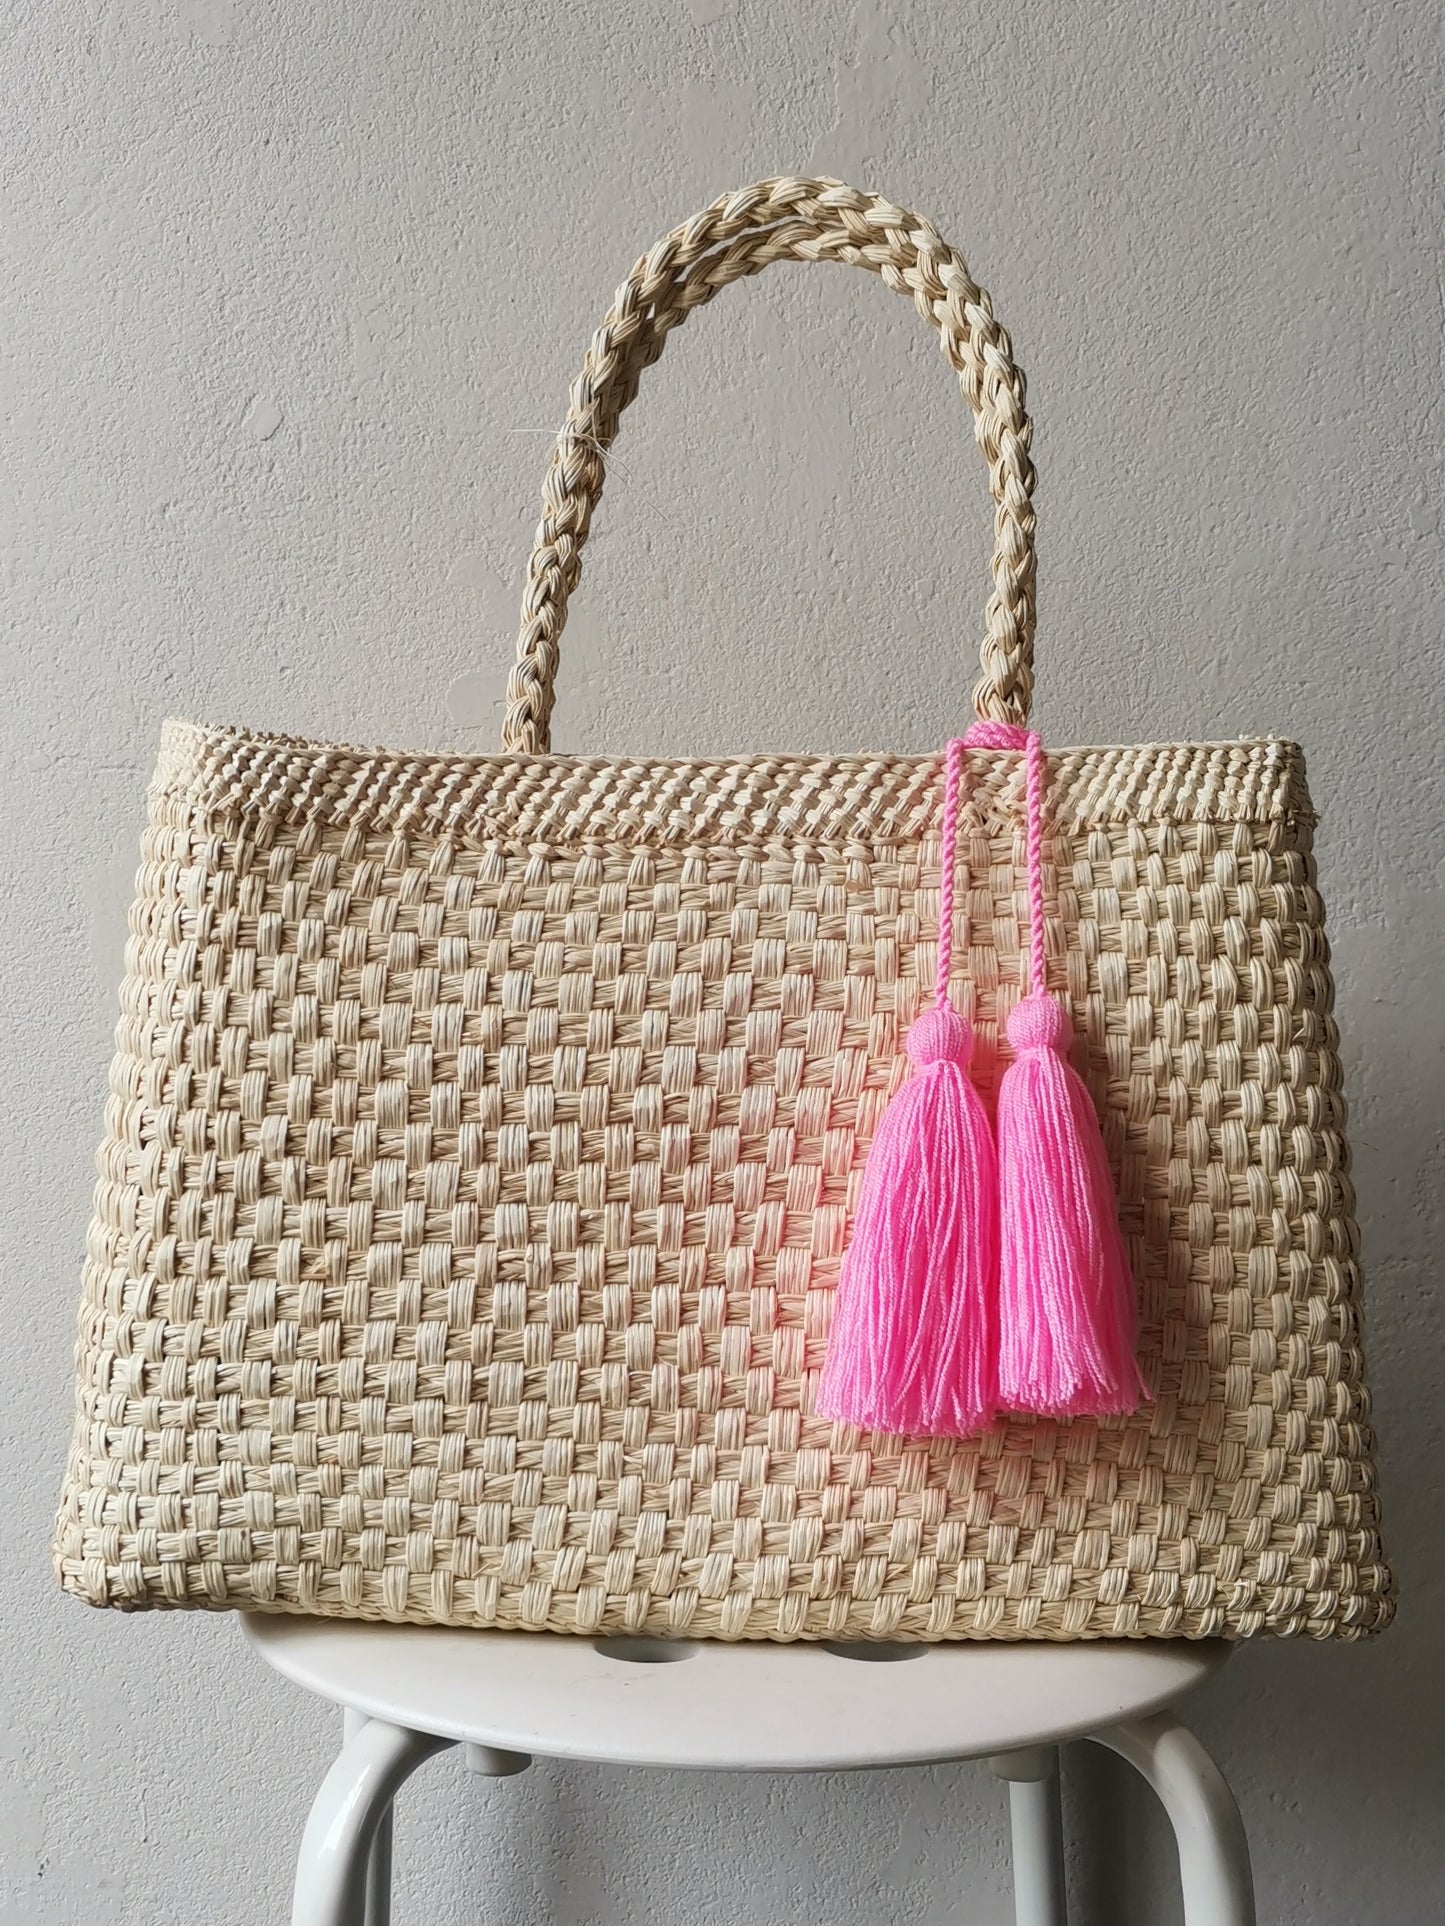 Cali L pink basket bag